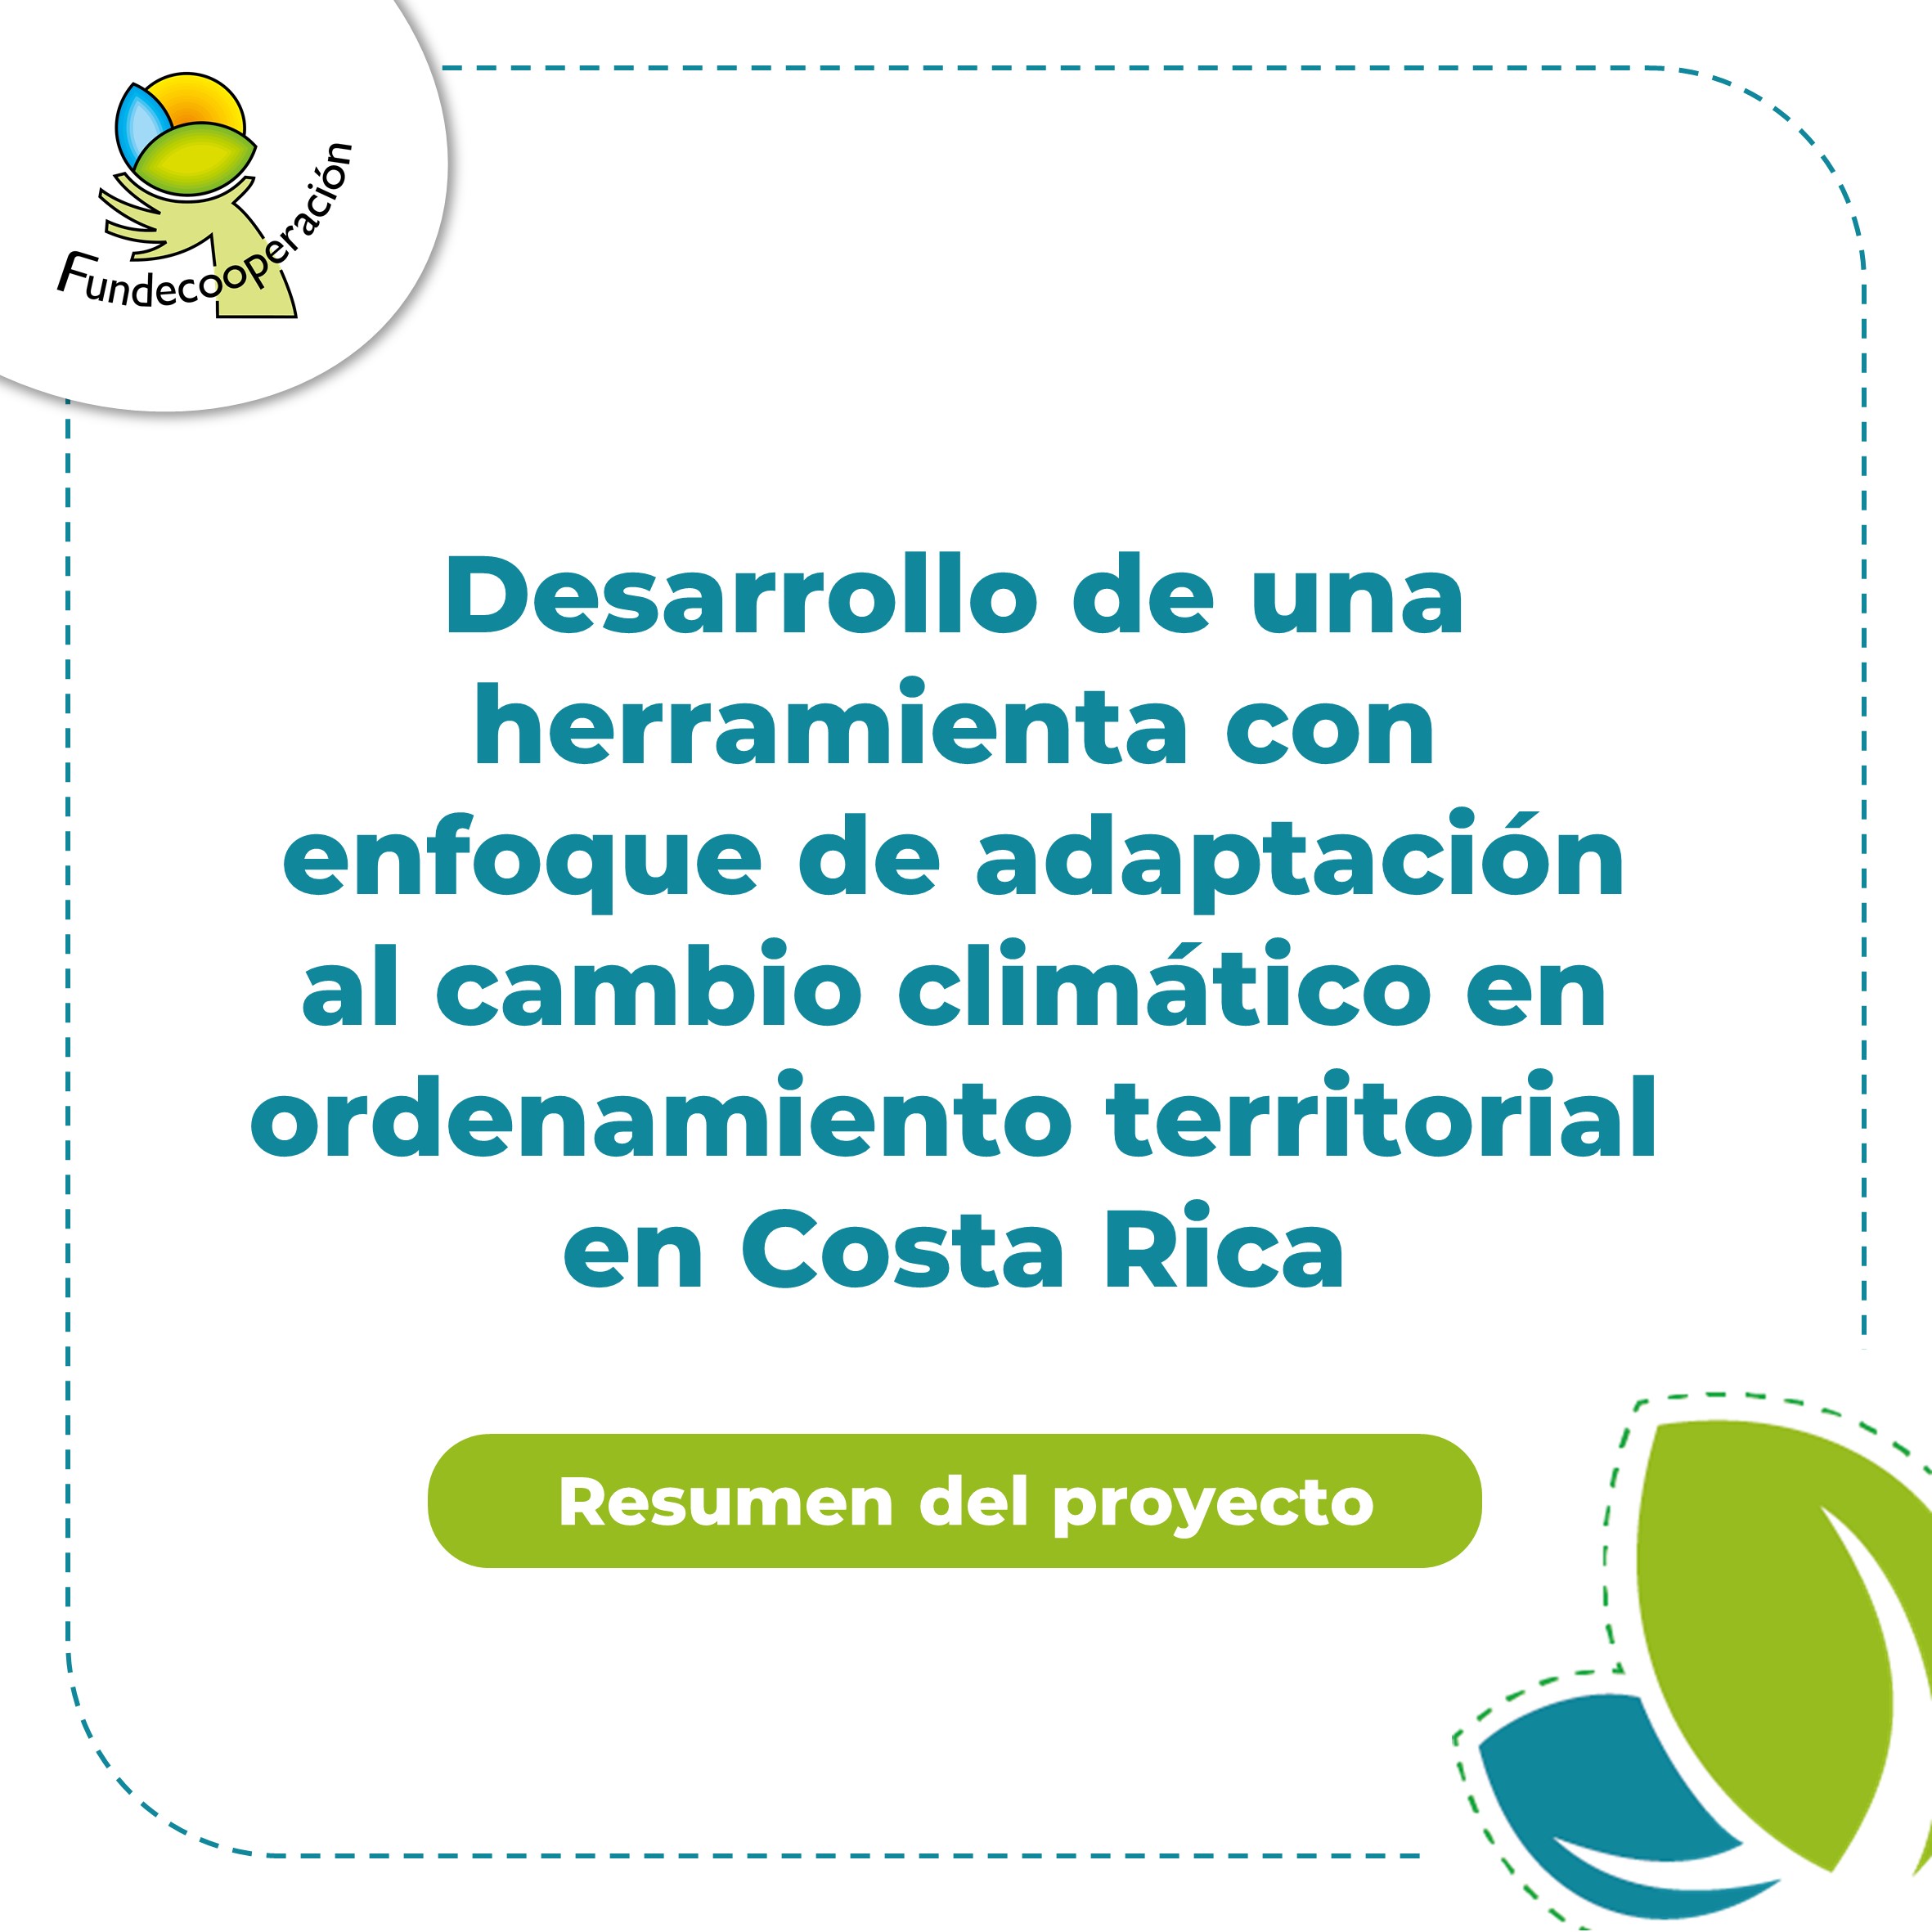 Desarrollo de una herramienta con enfoque de adaptación al cambio climático en ordenamiento territorial en Costa Rica